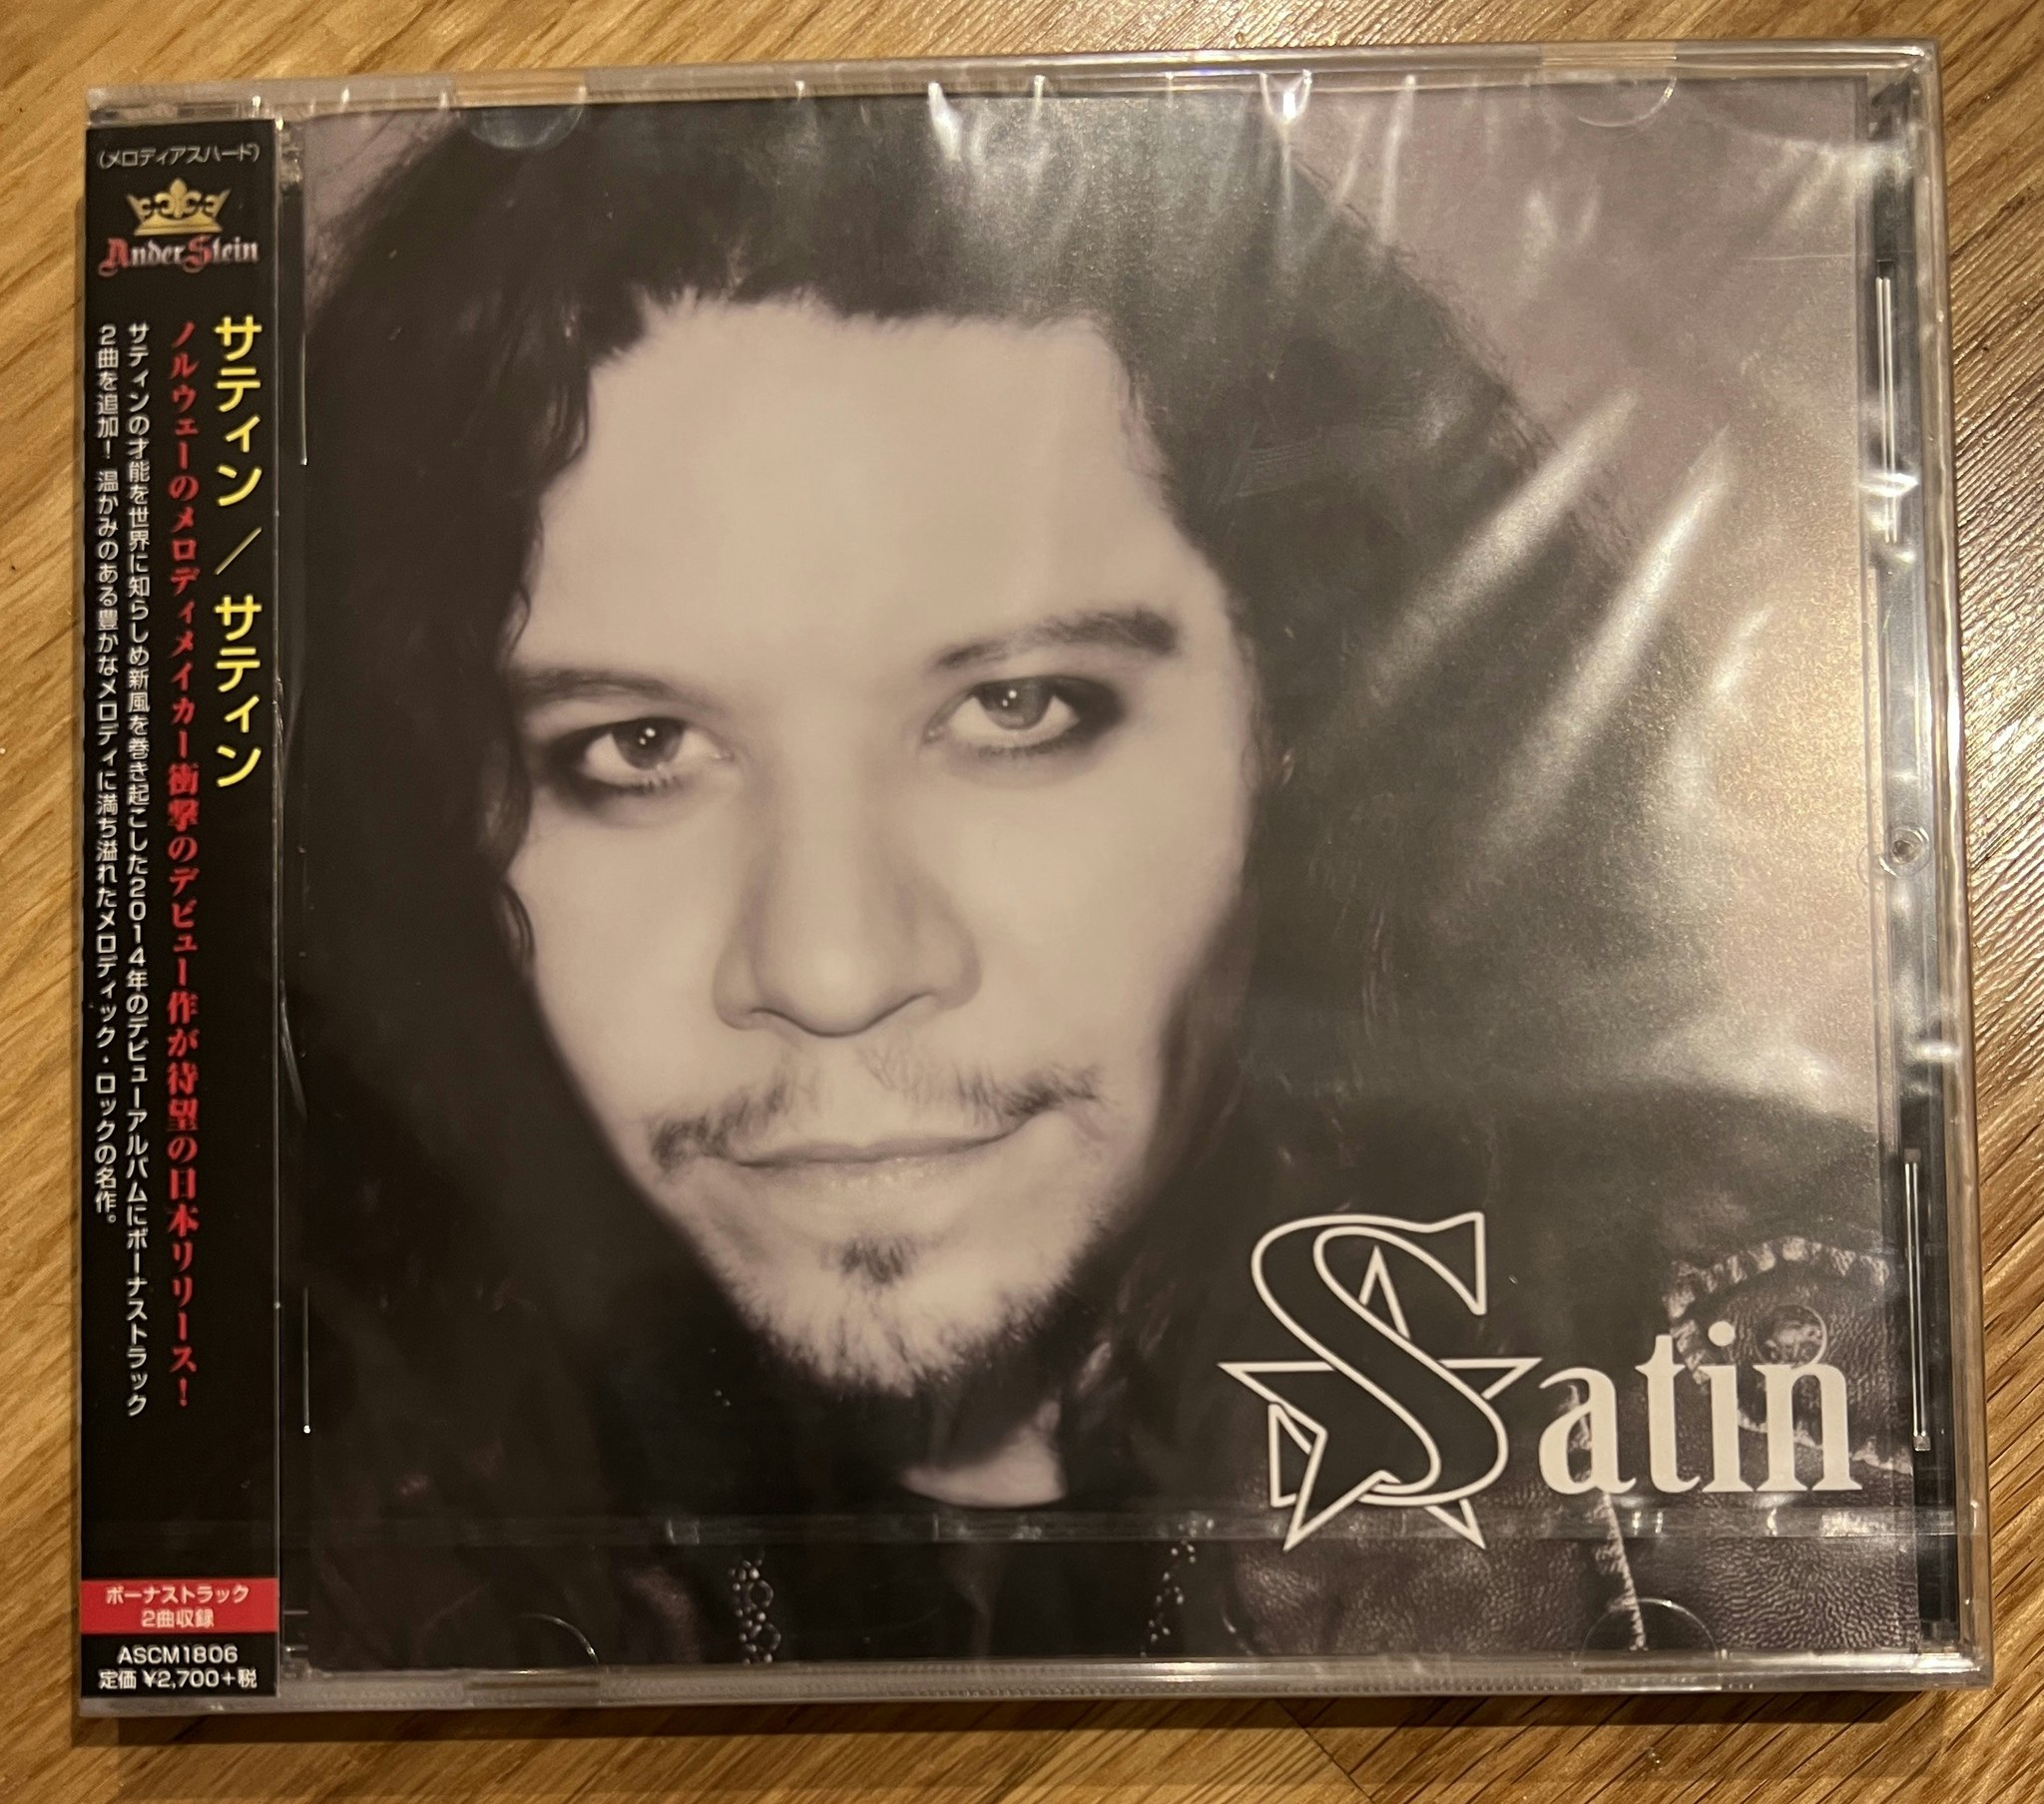 SATIN 2014 "Japansk Utgave" med bonus låt CD